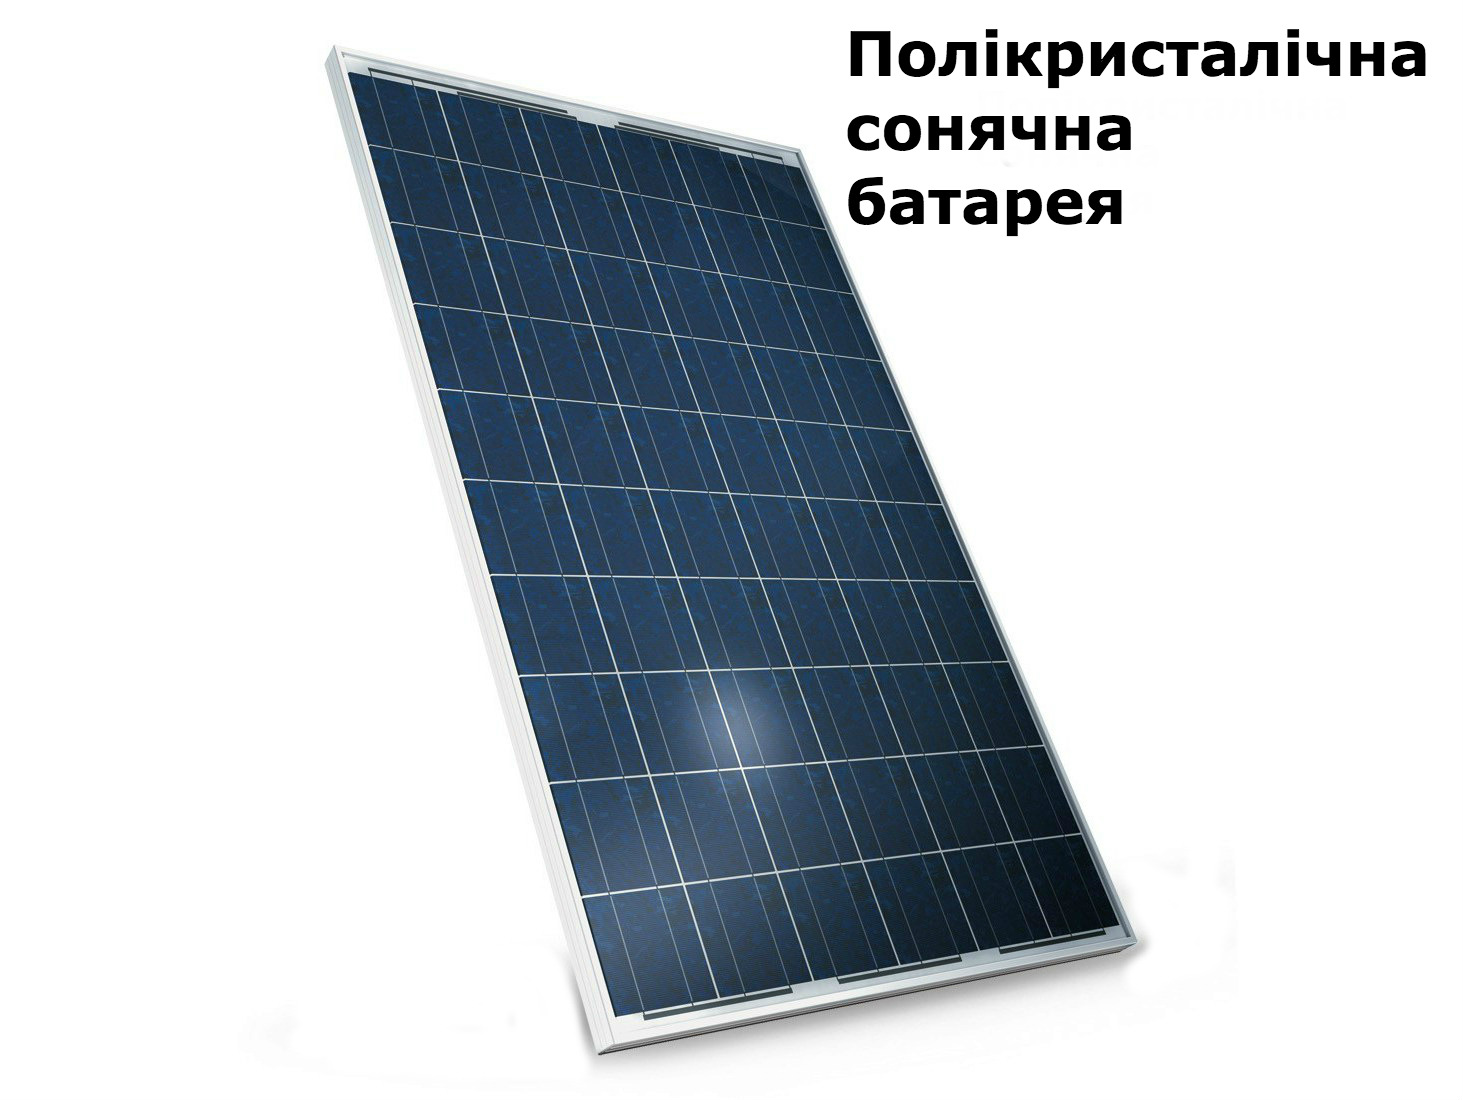 поликристаллическая солнечная батарея